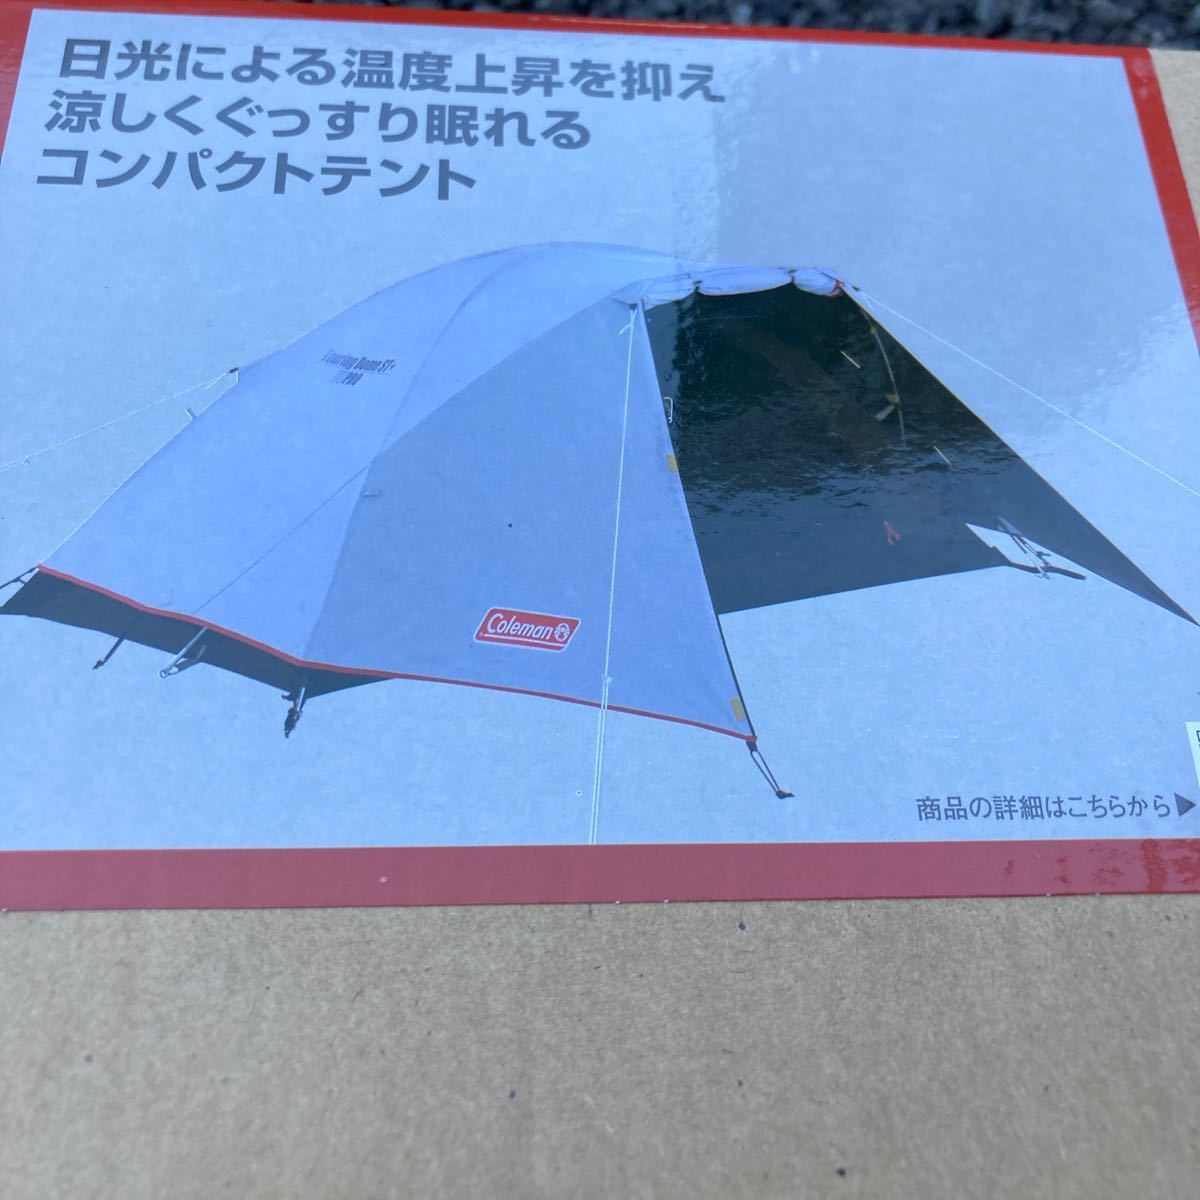 新品 Coleman コールマン ツーリングドーム ST+ テント コンパクトテント ソロキャンプ